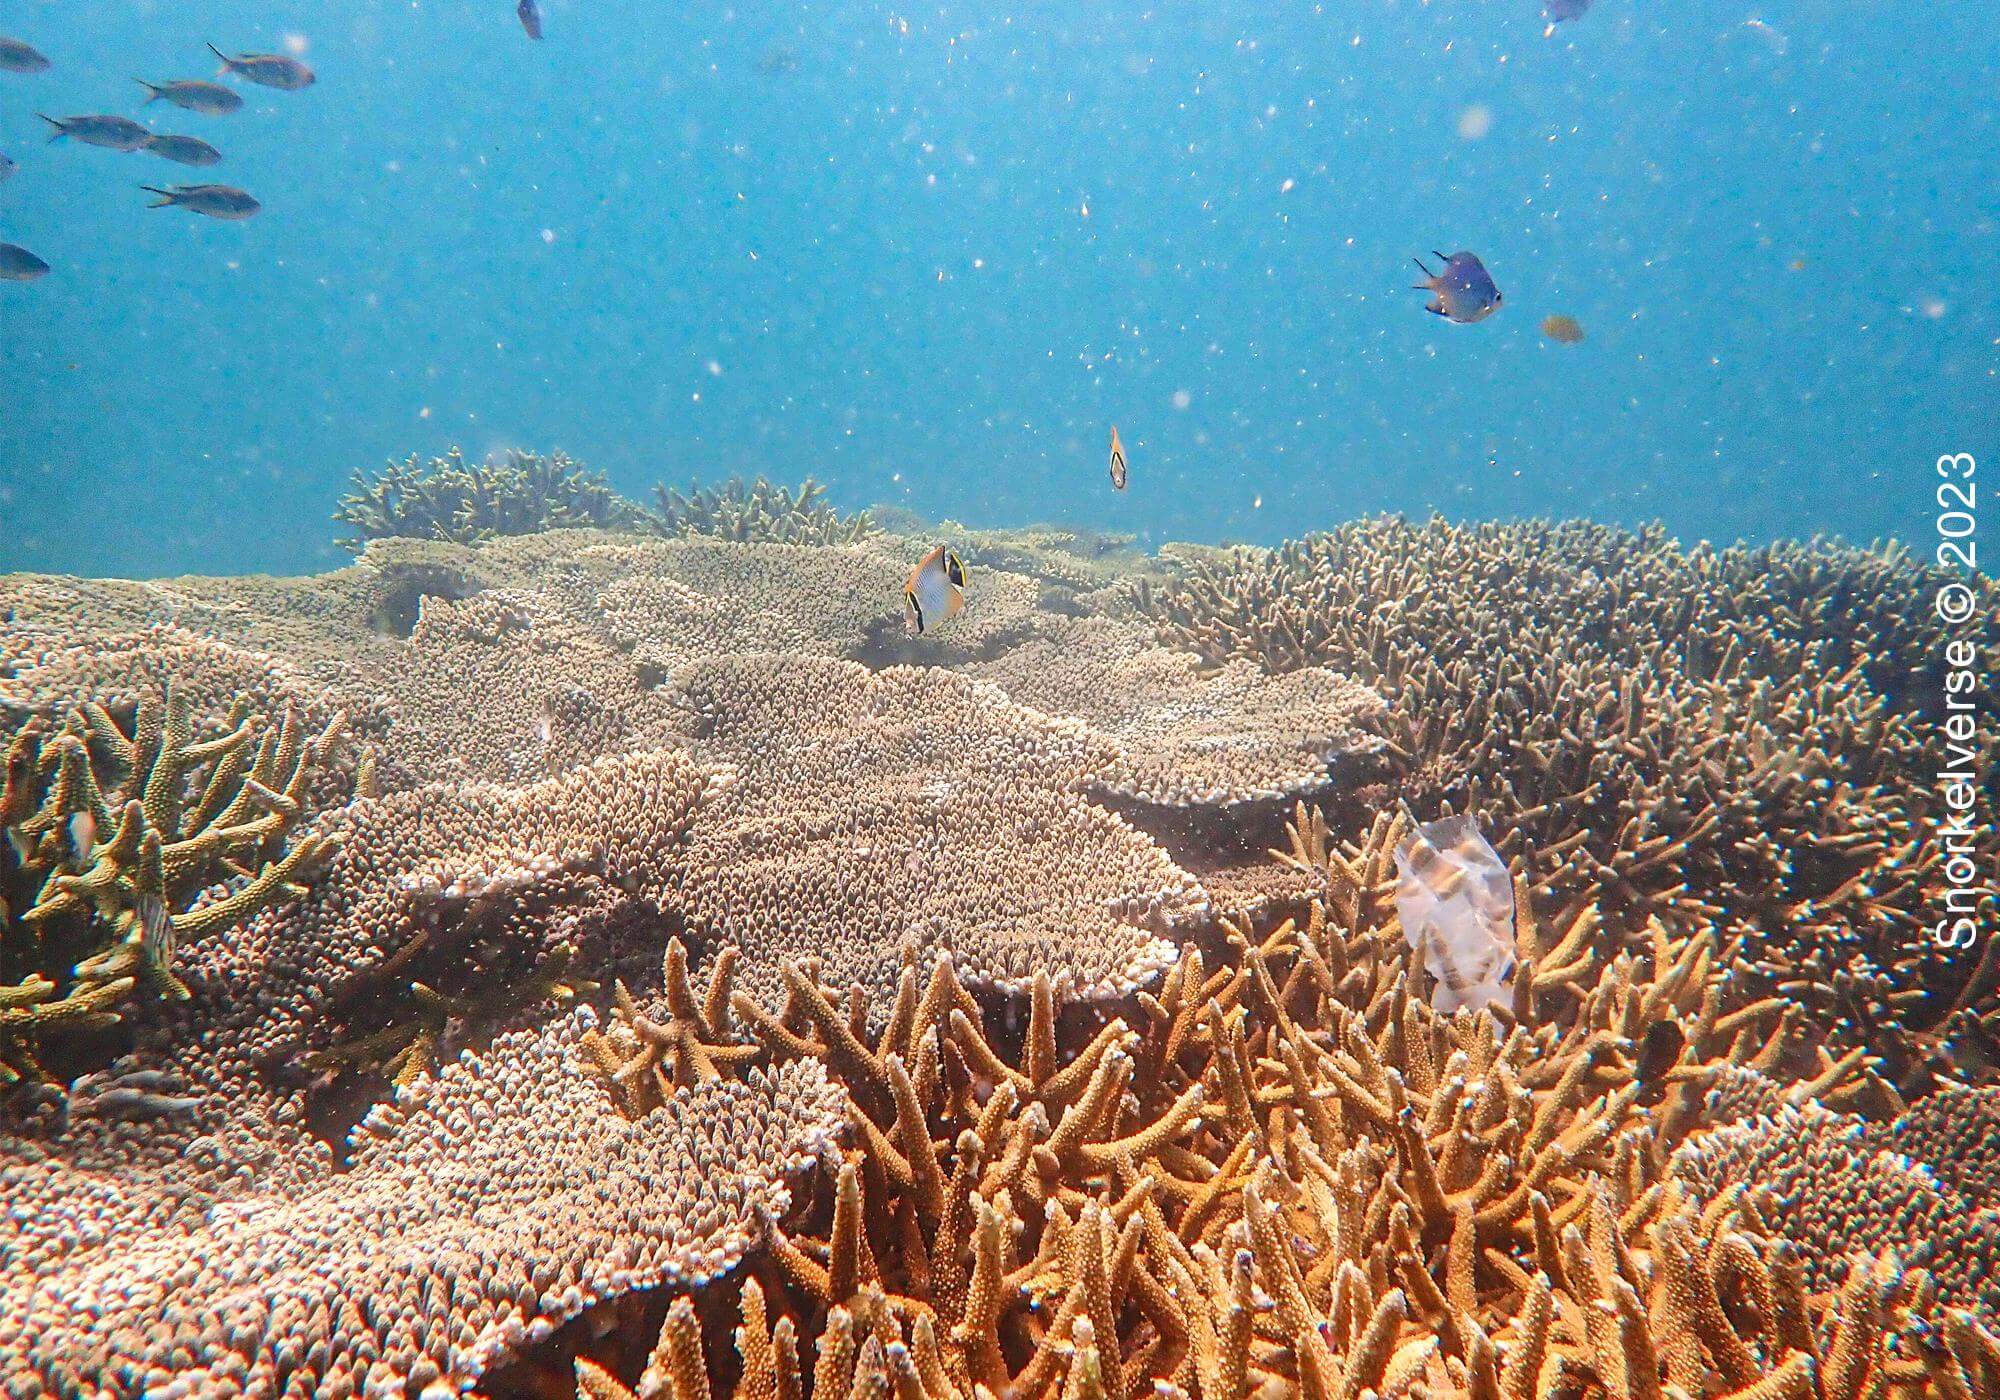 Coral Reef at Khai Nai